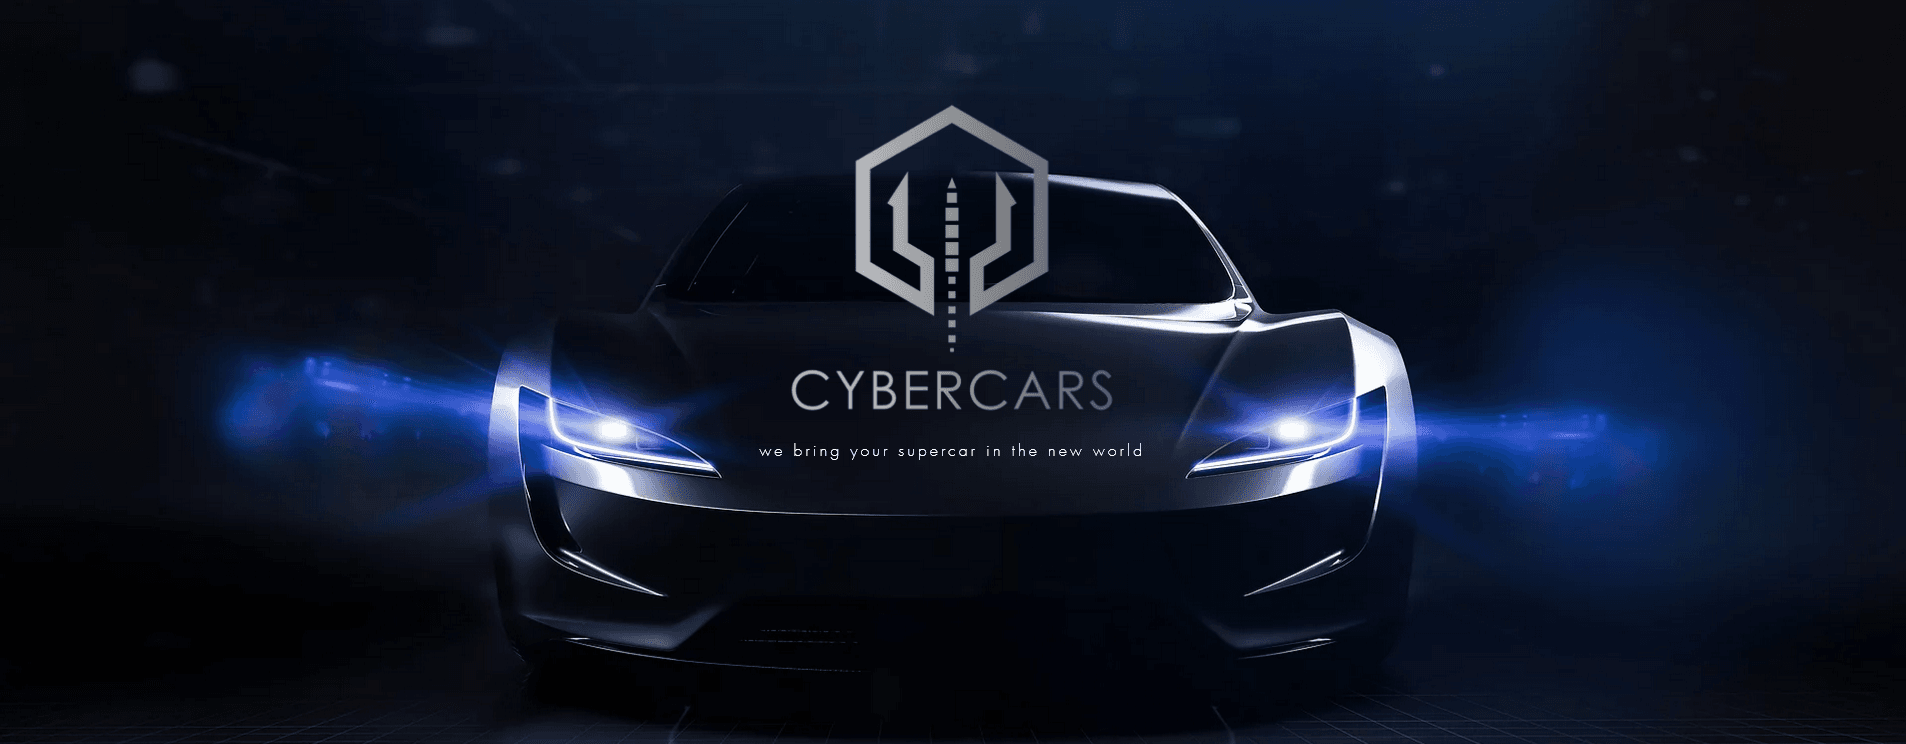 CyberCar 横幅